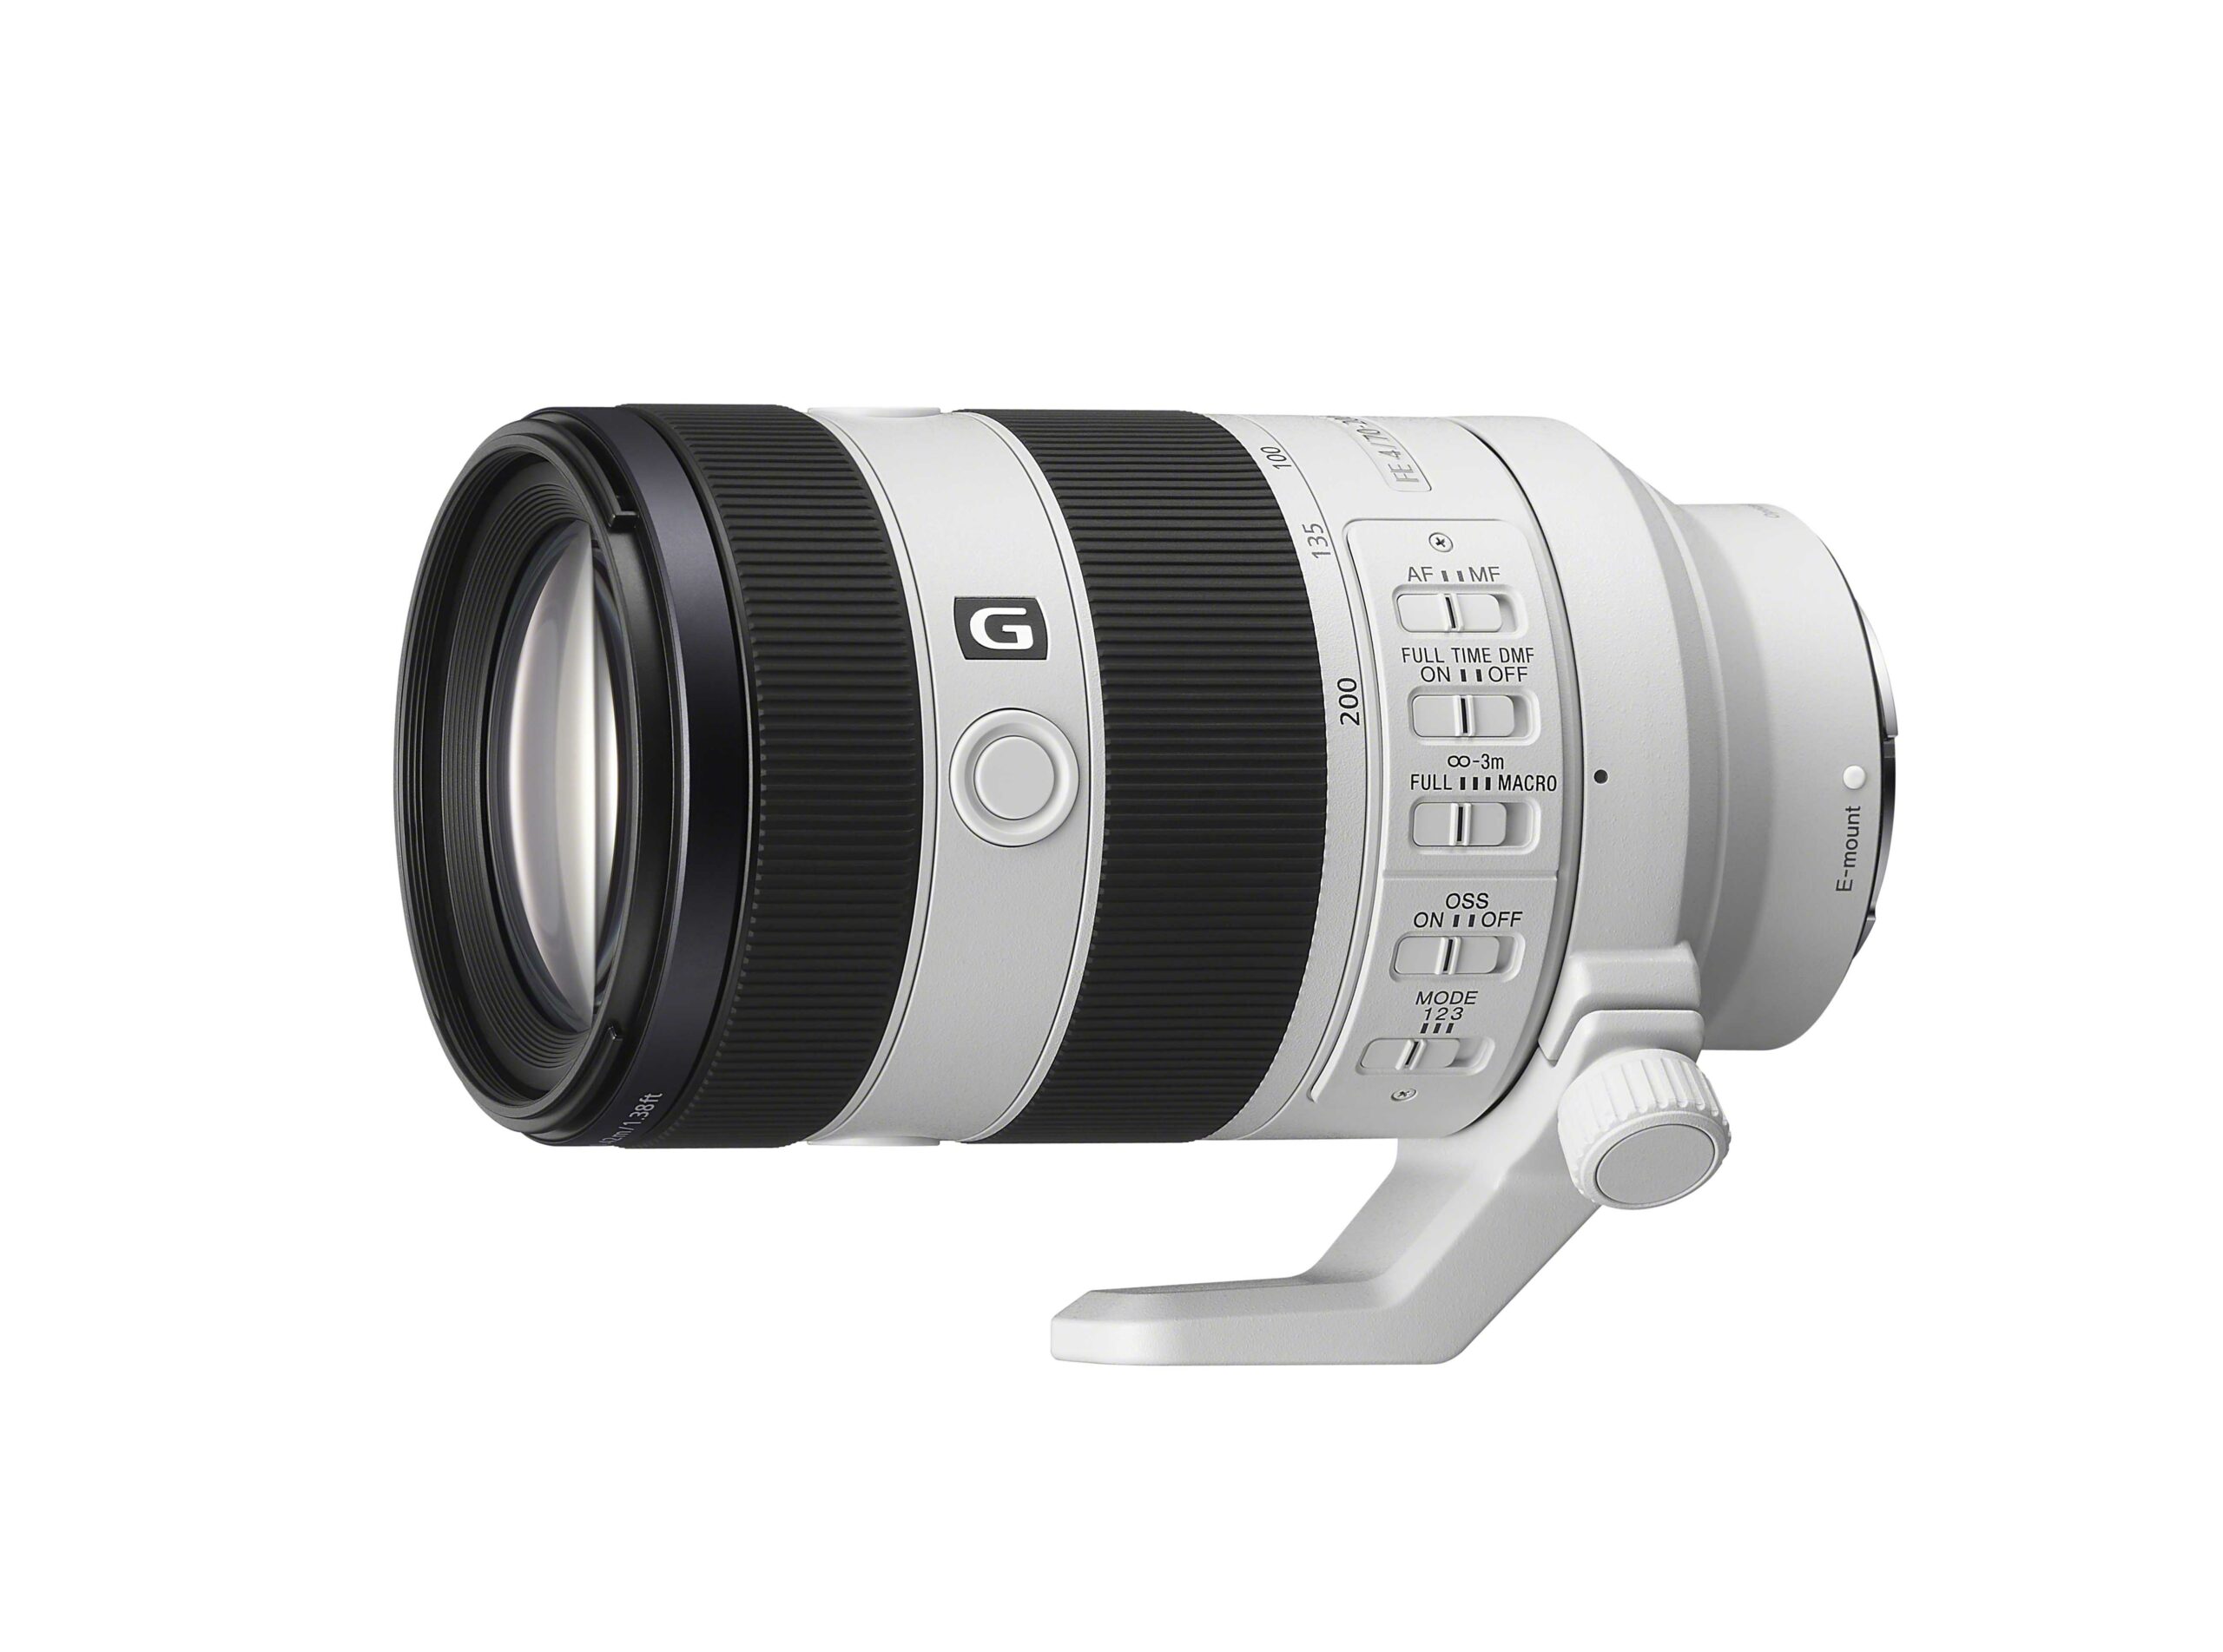 Sony 全新 FE 70-200mm F4 Macro G OSS II 全片幅望遠微距變焦鏡頭 輕巧設計、優異畫質與自動對焦性能、兼具微距與望遠多元拍攝 @3C 達人廖阿輝